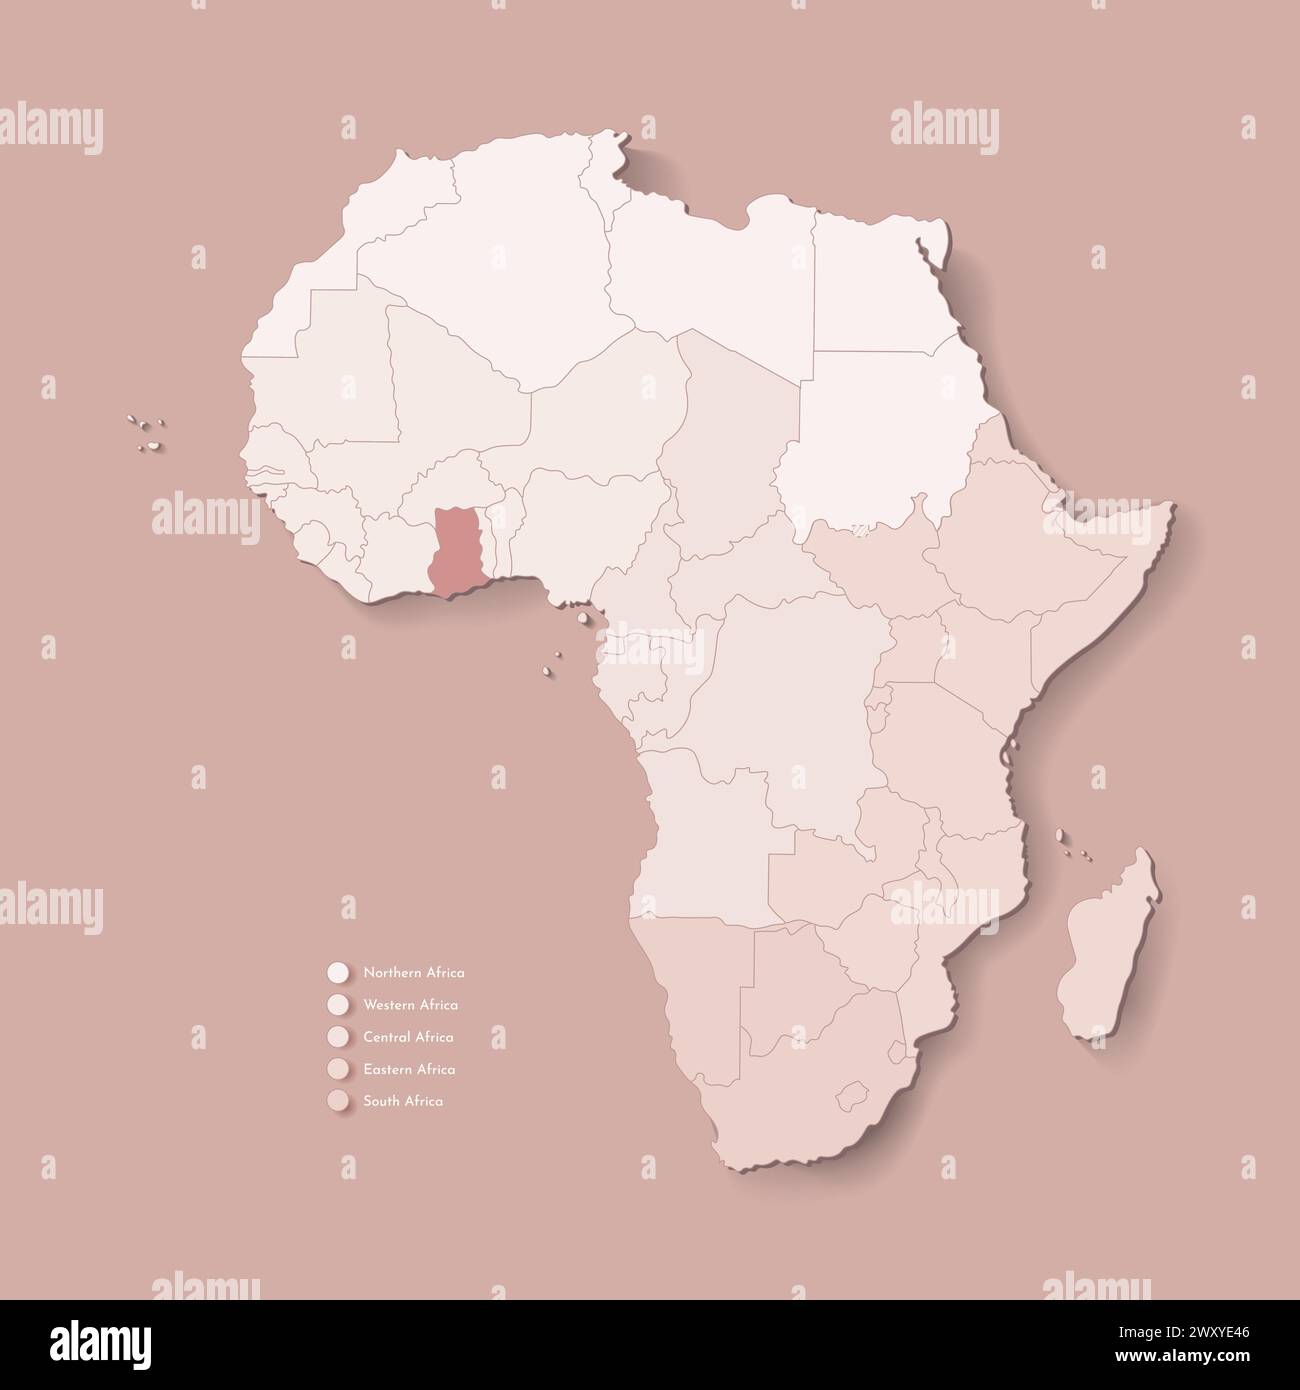 Illustrazione vettoriale con continente africano con confini di tutti gli stati e paese marcato Ghana. Mappa politica di colore marrone con occidentale, sud e. Illustrazione Vettoriale